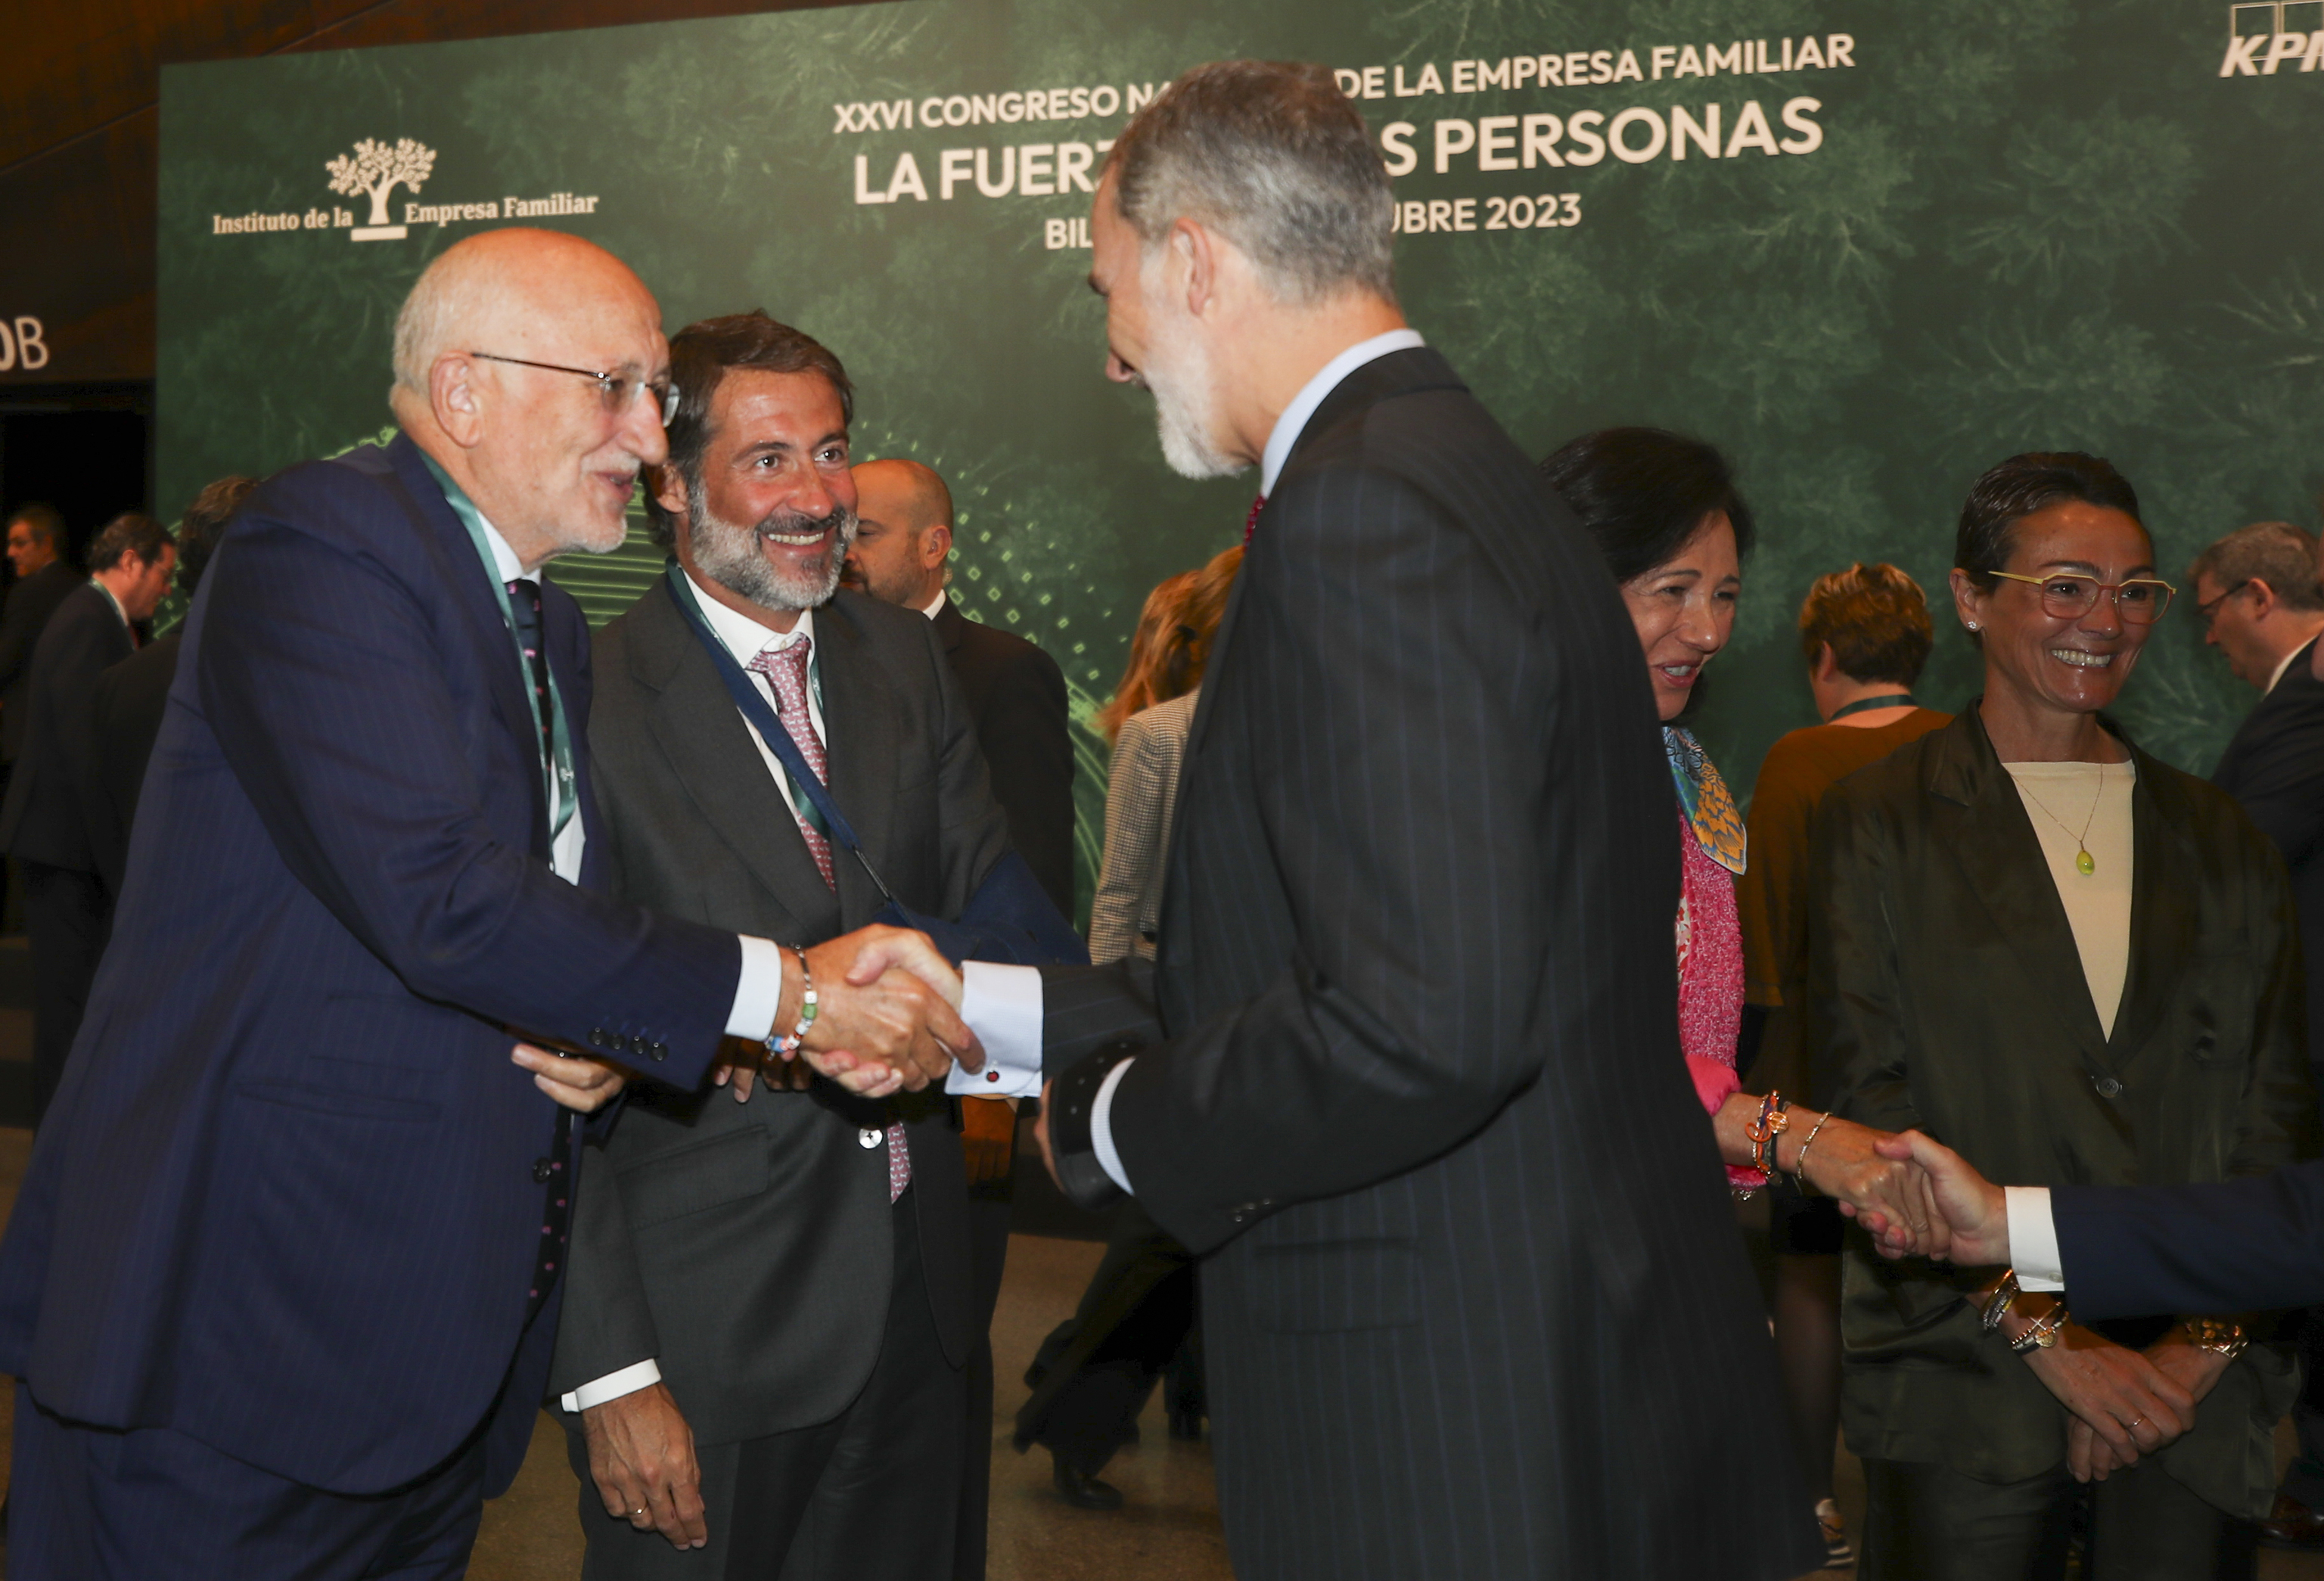 El Rey Felipe VI saluda al presidente de Mercadona  Juan Roig, y al presidente de KPMG Espaa, Juan Jos Cano